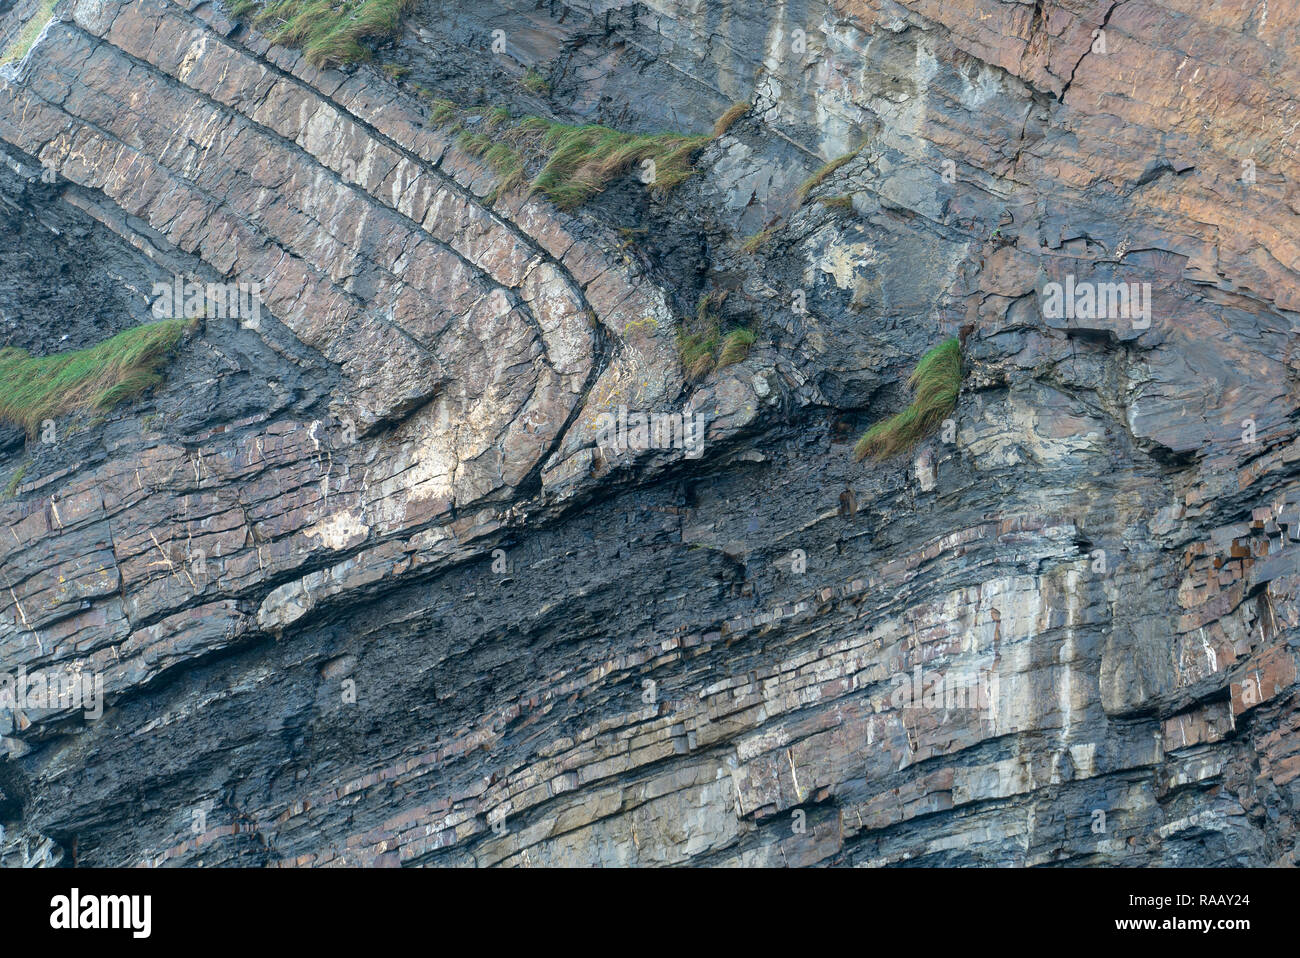 Spektakulär gefaltete Sequenz von abwechselnd grauen Schiefern und Sandsteinen Detail [3 von 5], North Cornwall UK Stockfoto